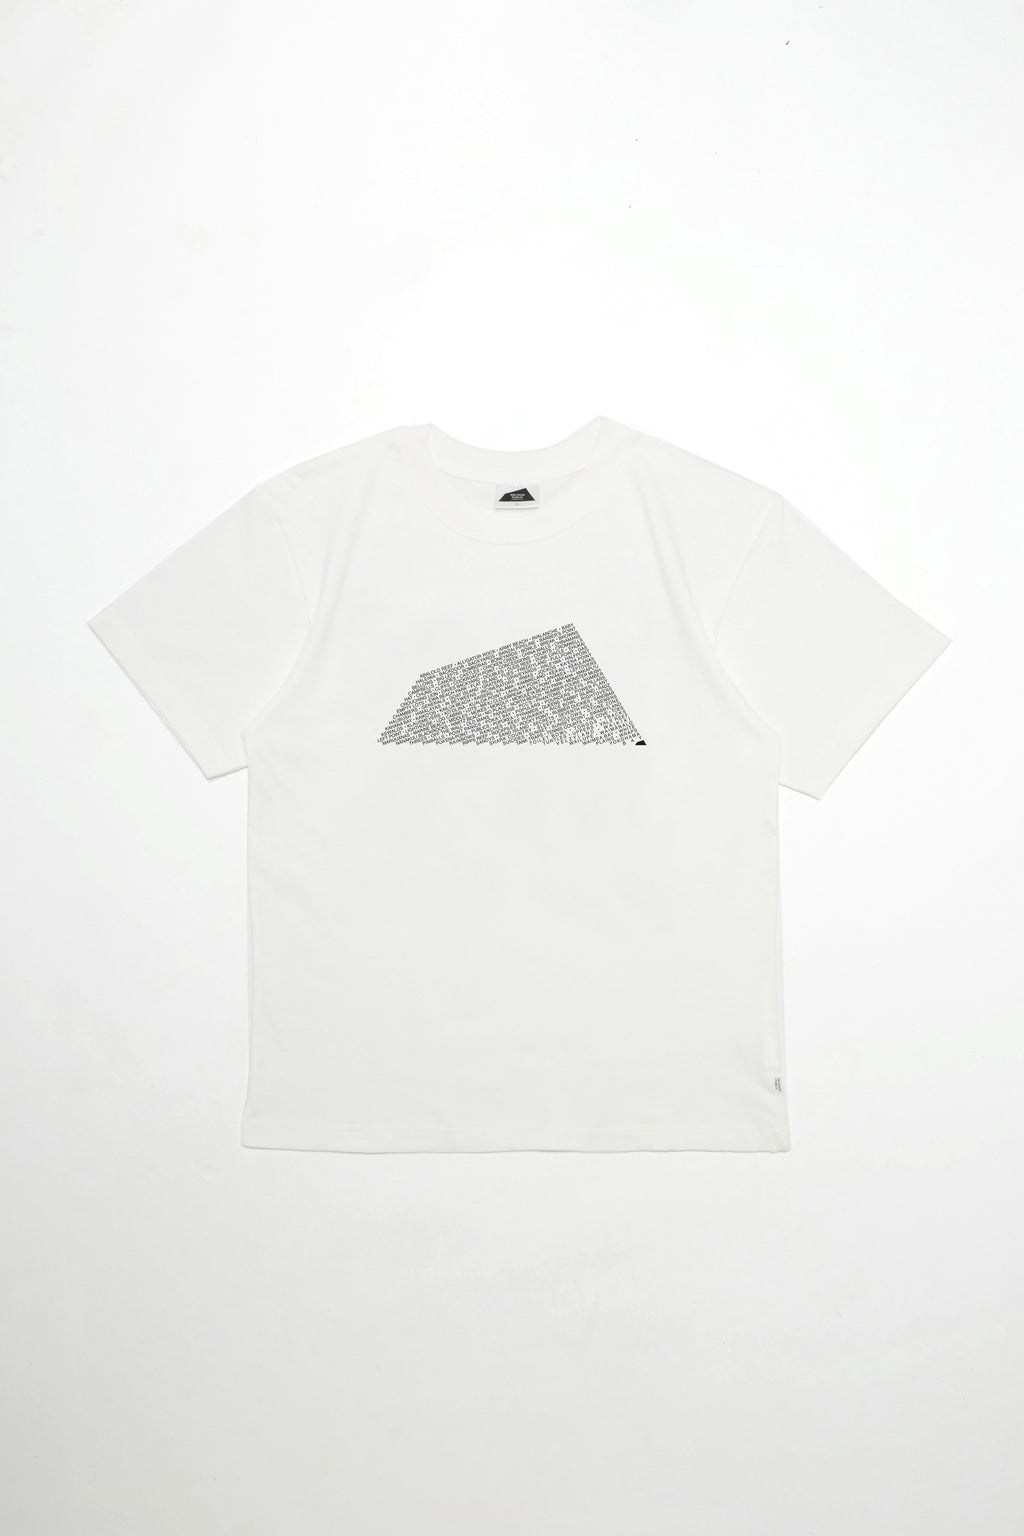 T-Shirt - Breaks - White